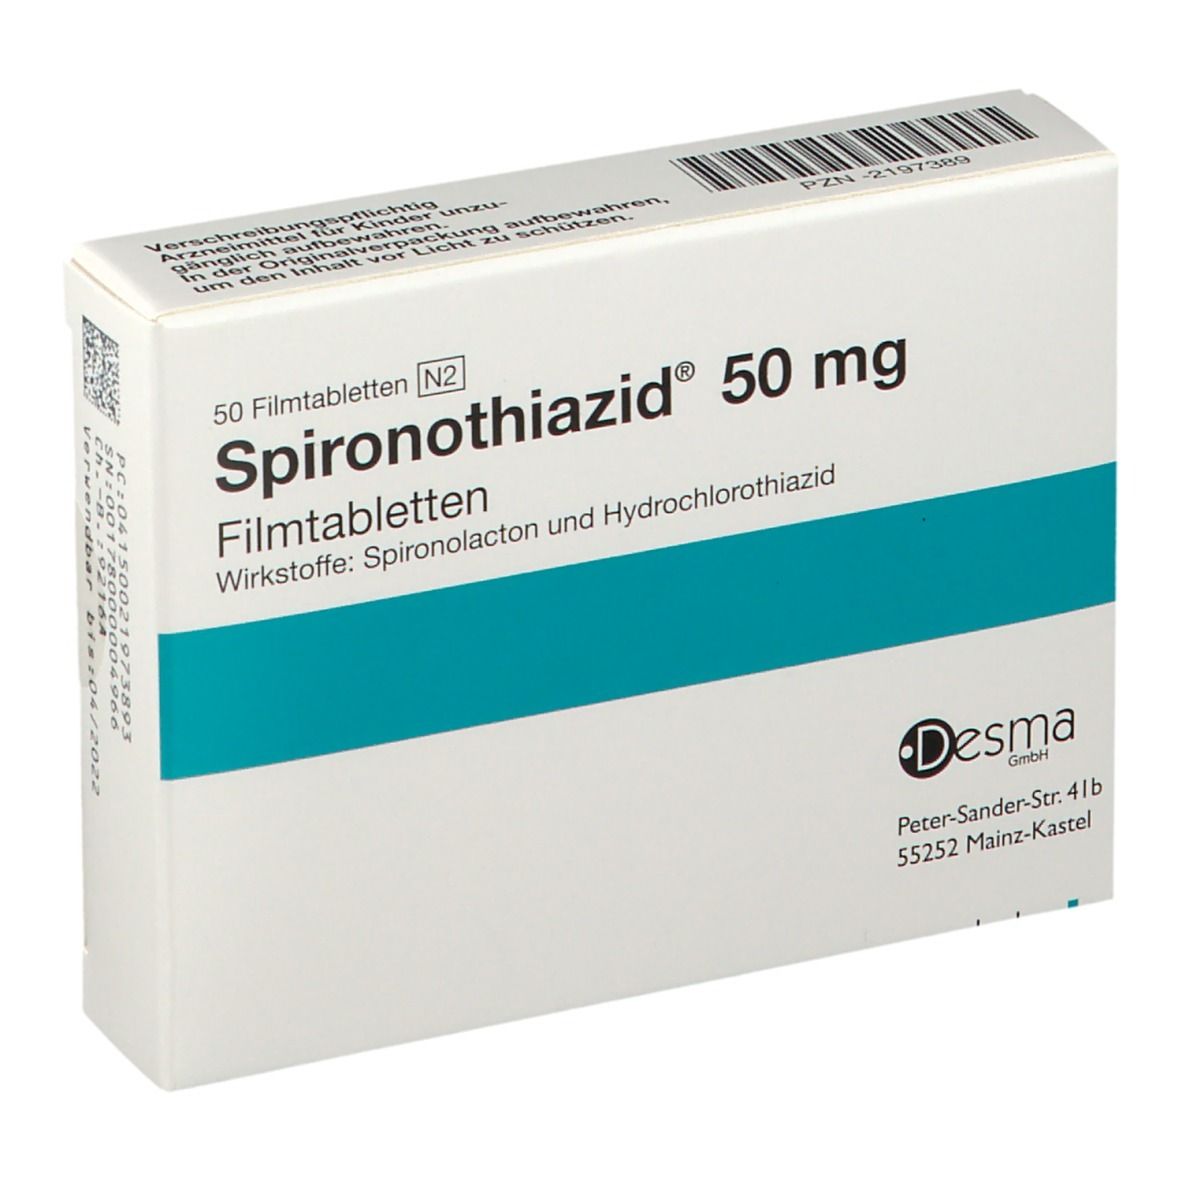 Spironothiazid® 50 mg